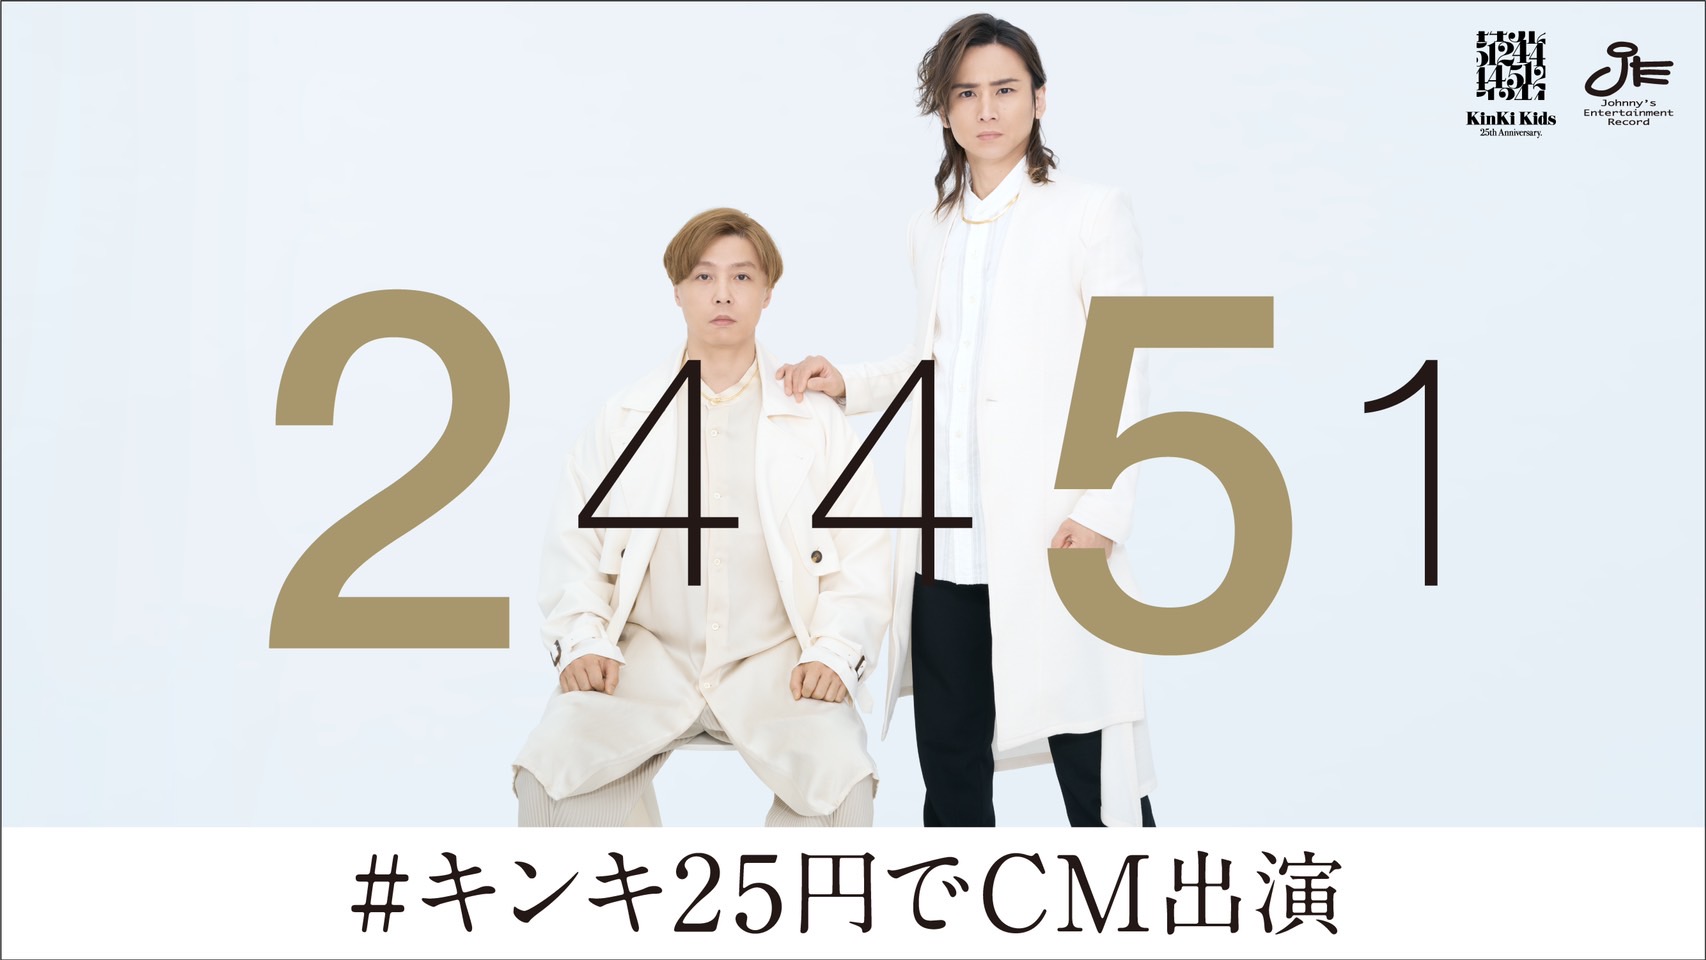 KinKi Kids CDデビュー25周年記念企画「#キンキ25円でCM出演 」に当選しました